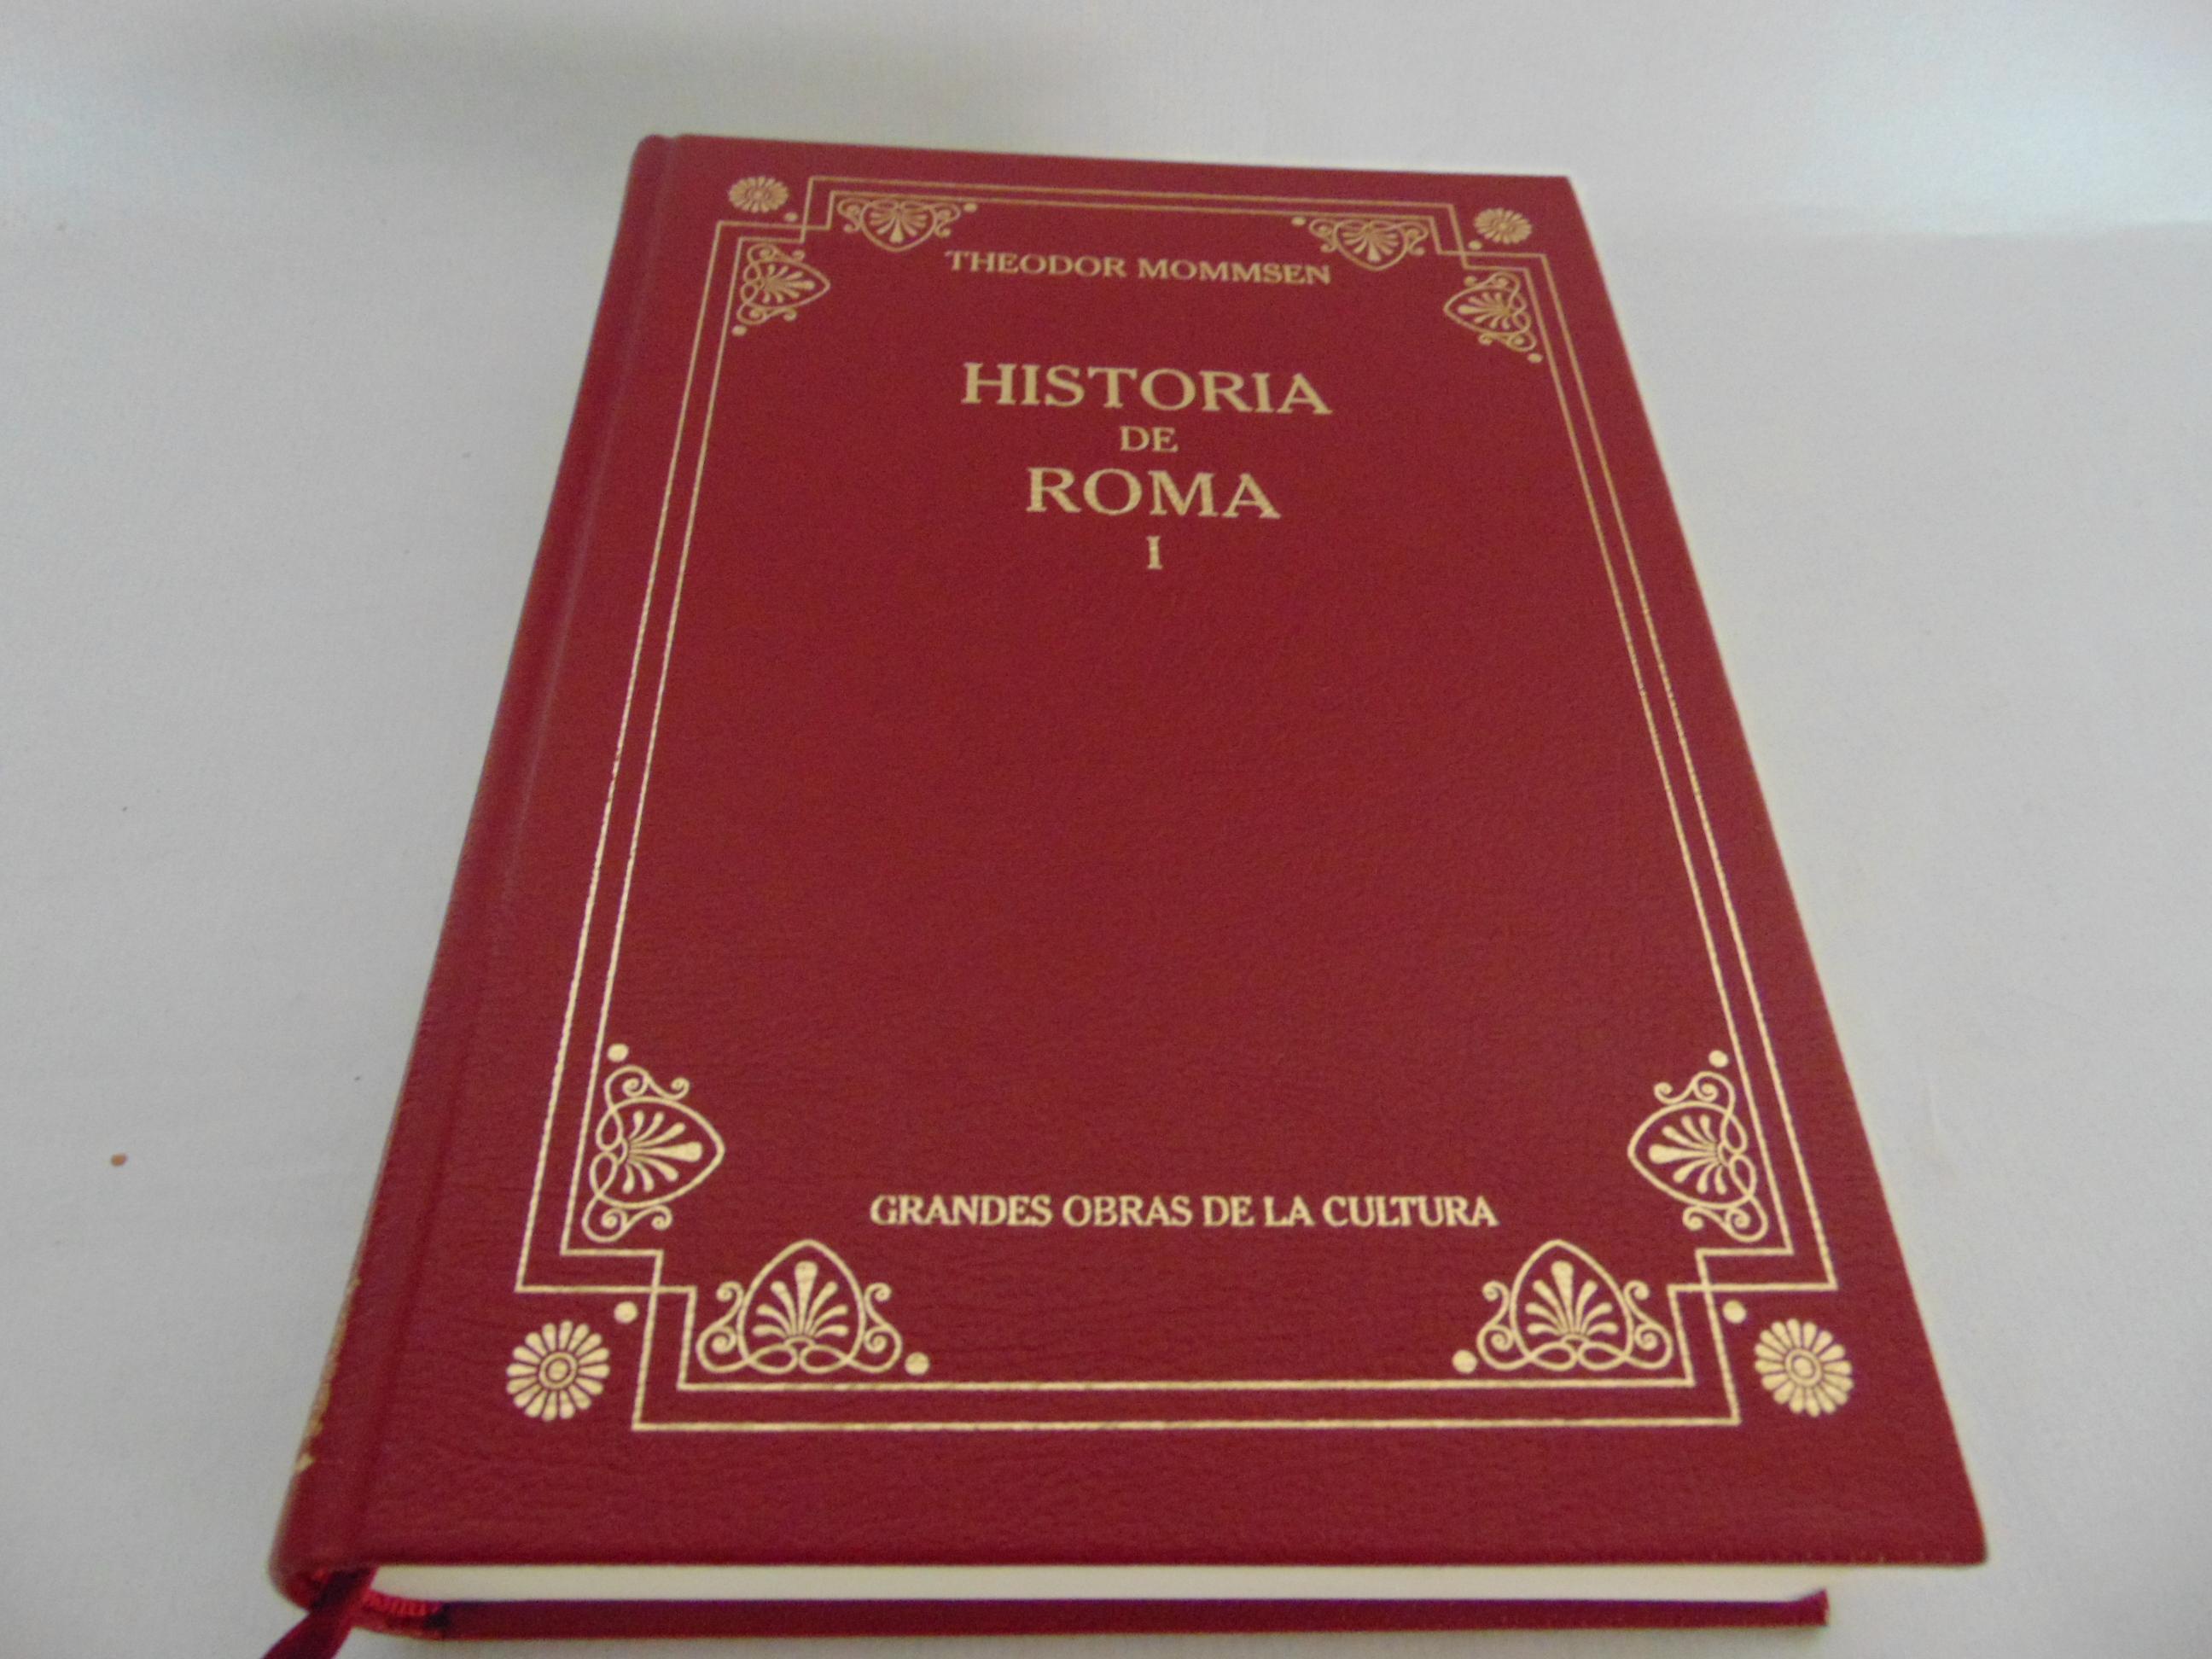 Libro de Historia de Roma